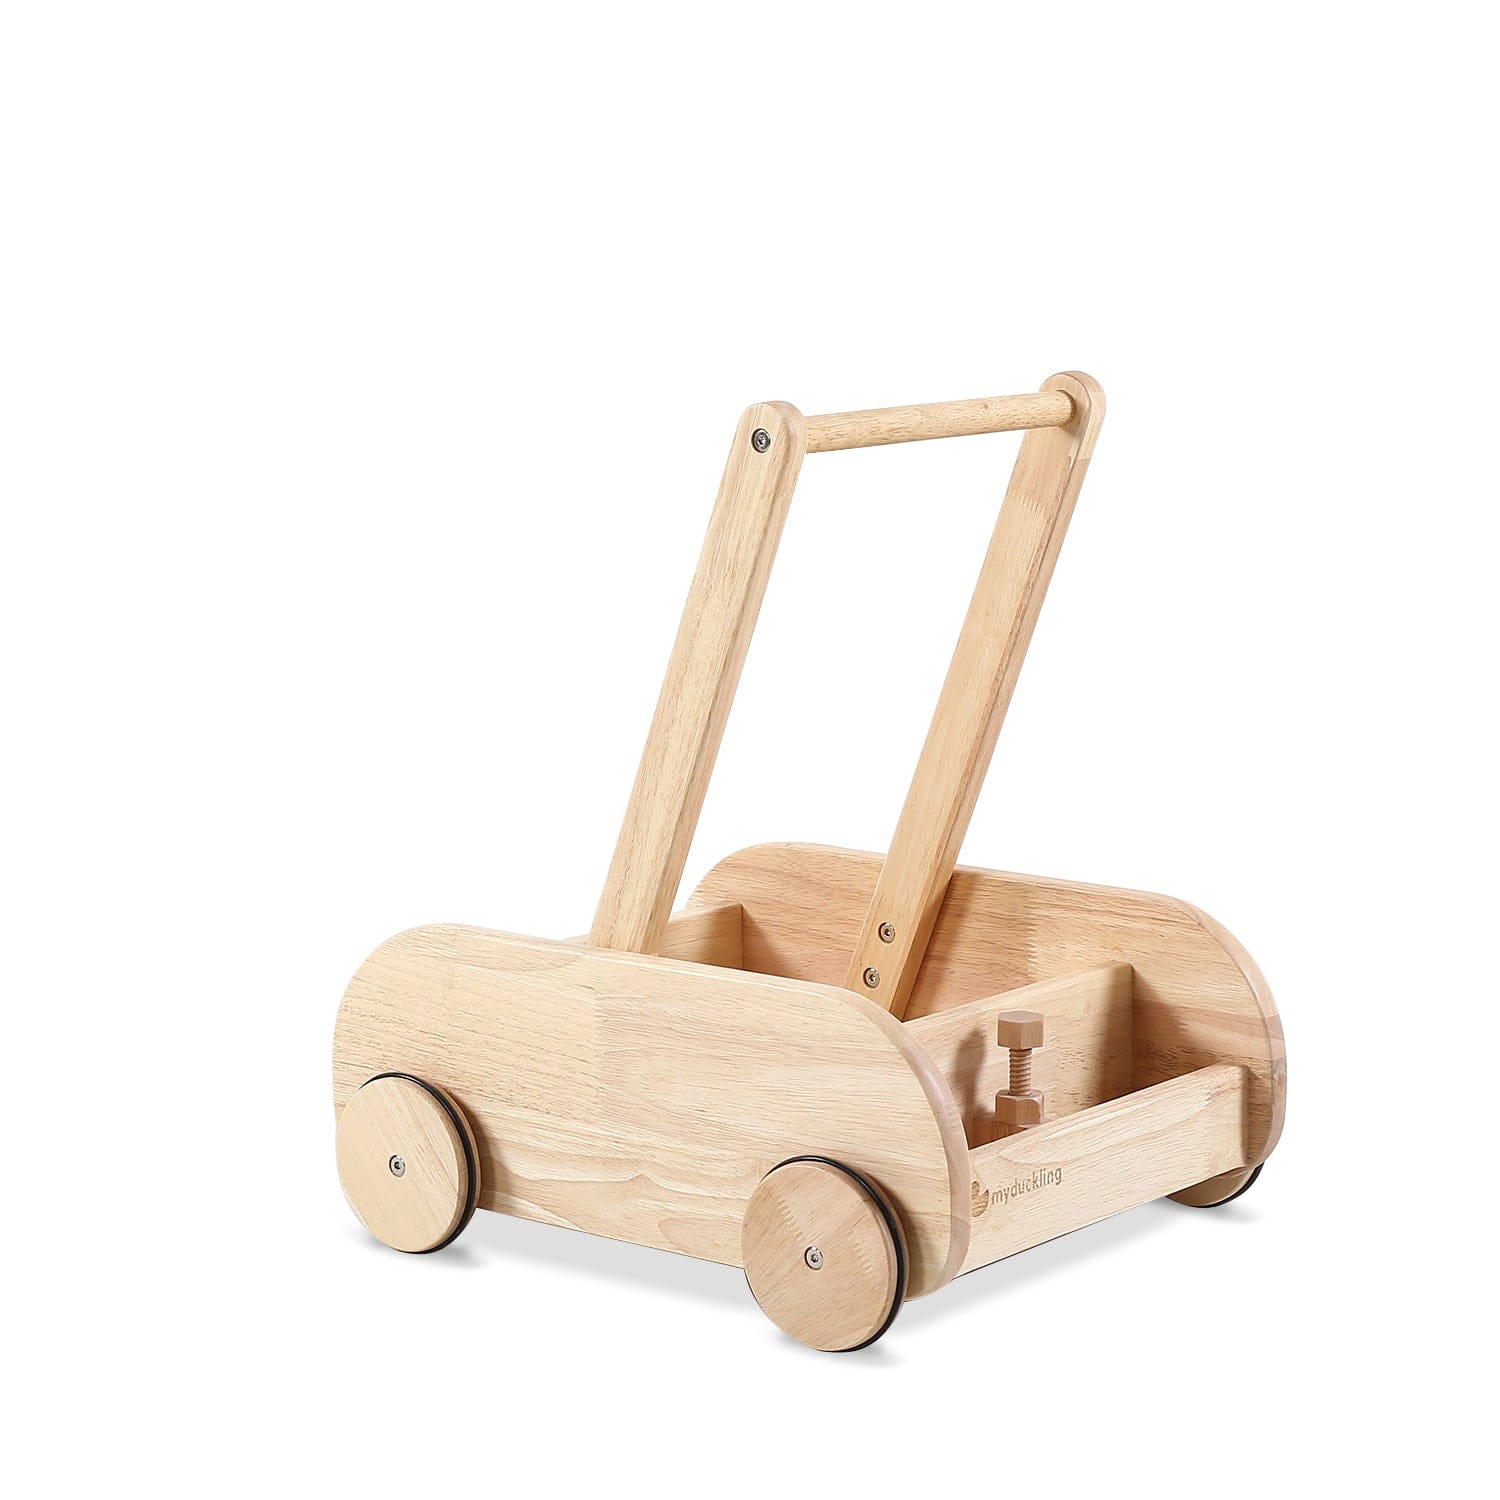 Wooden Adjustable Speed Control Baby Walker